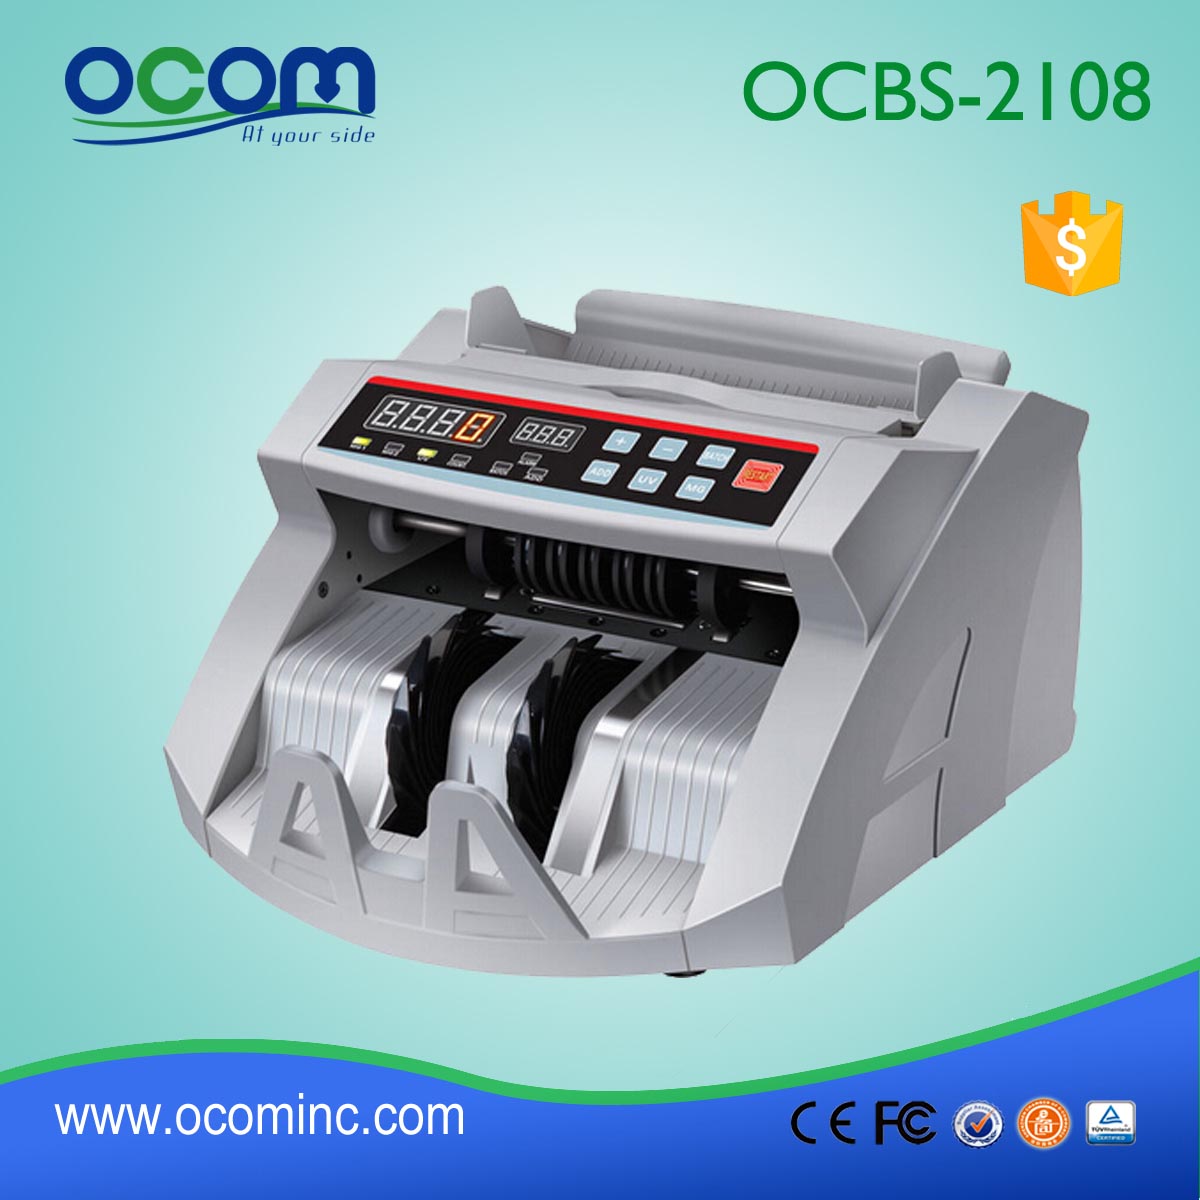 (OCBC-2108) - OCOM wykonany 2016 najnowszy automatyczny licznik rachunek